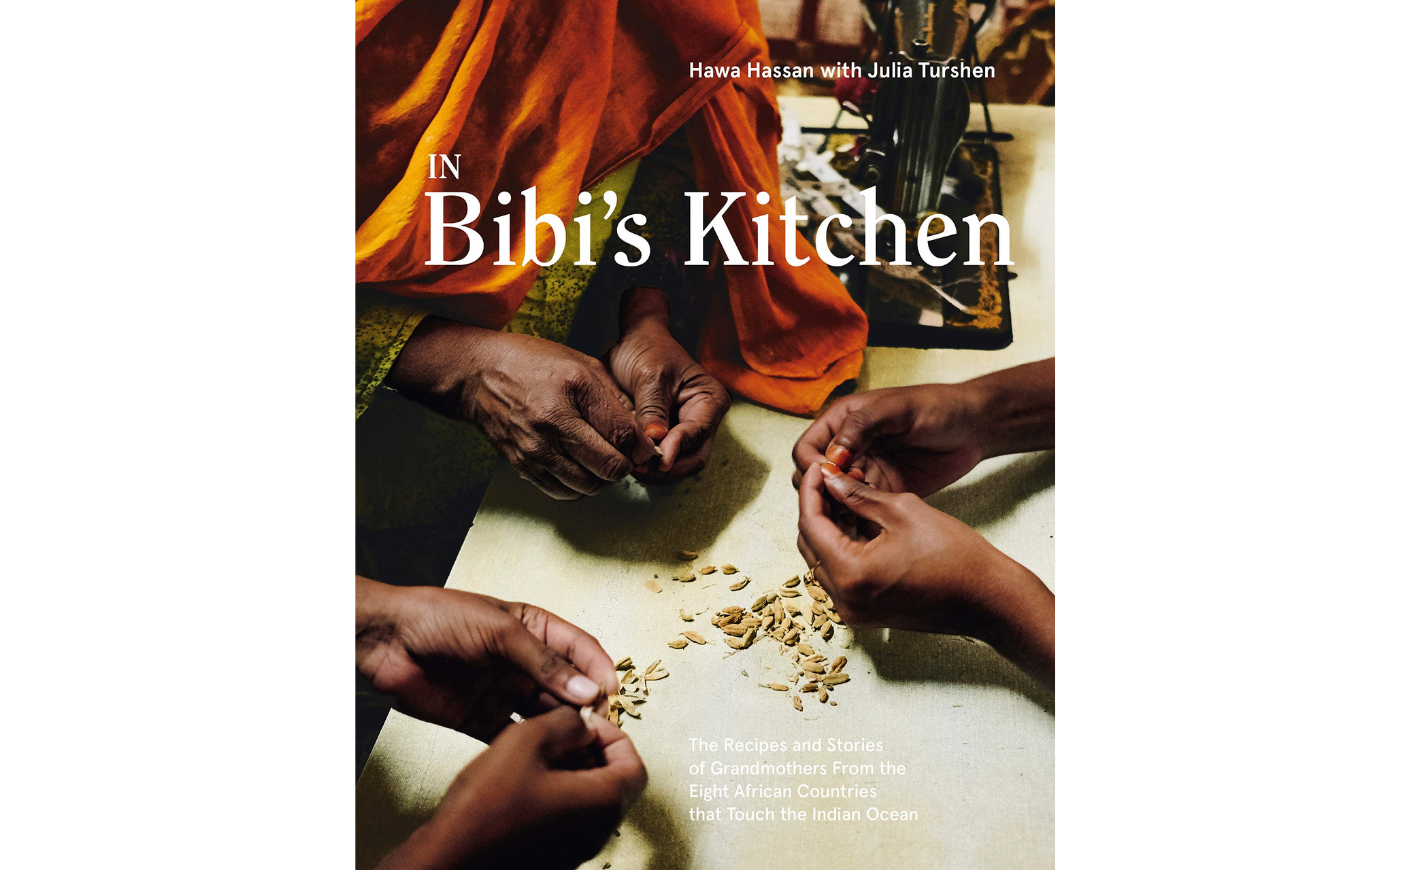 In Bibi's Kitchen, Hawa Hassan and Julia Turshen